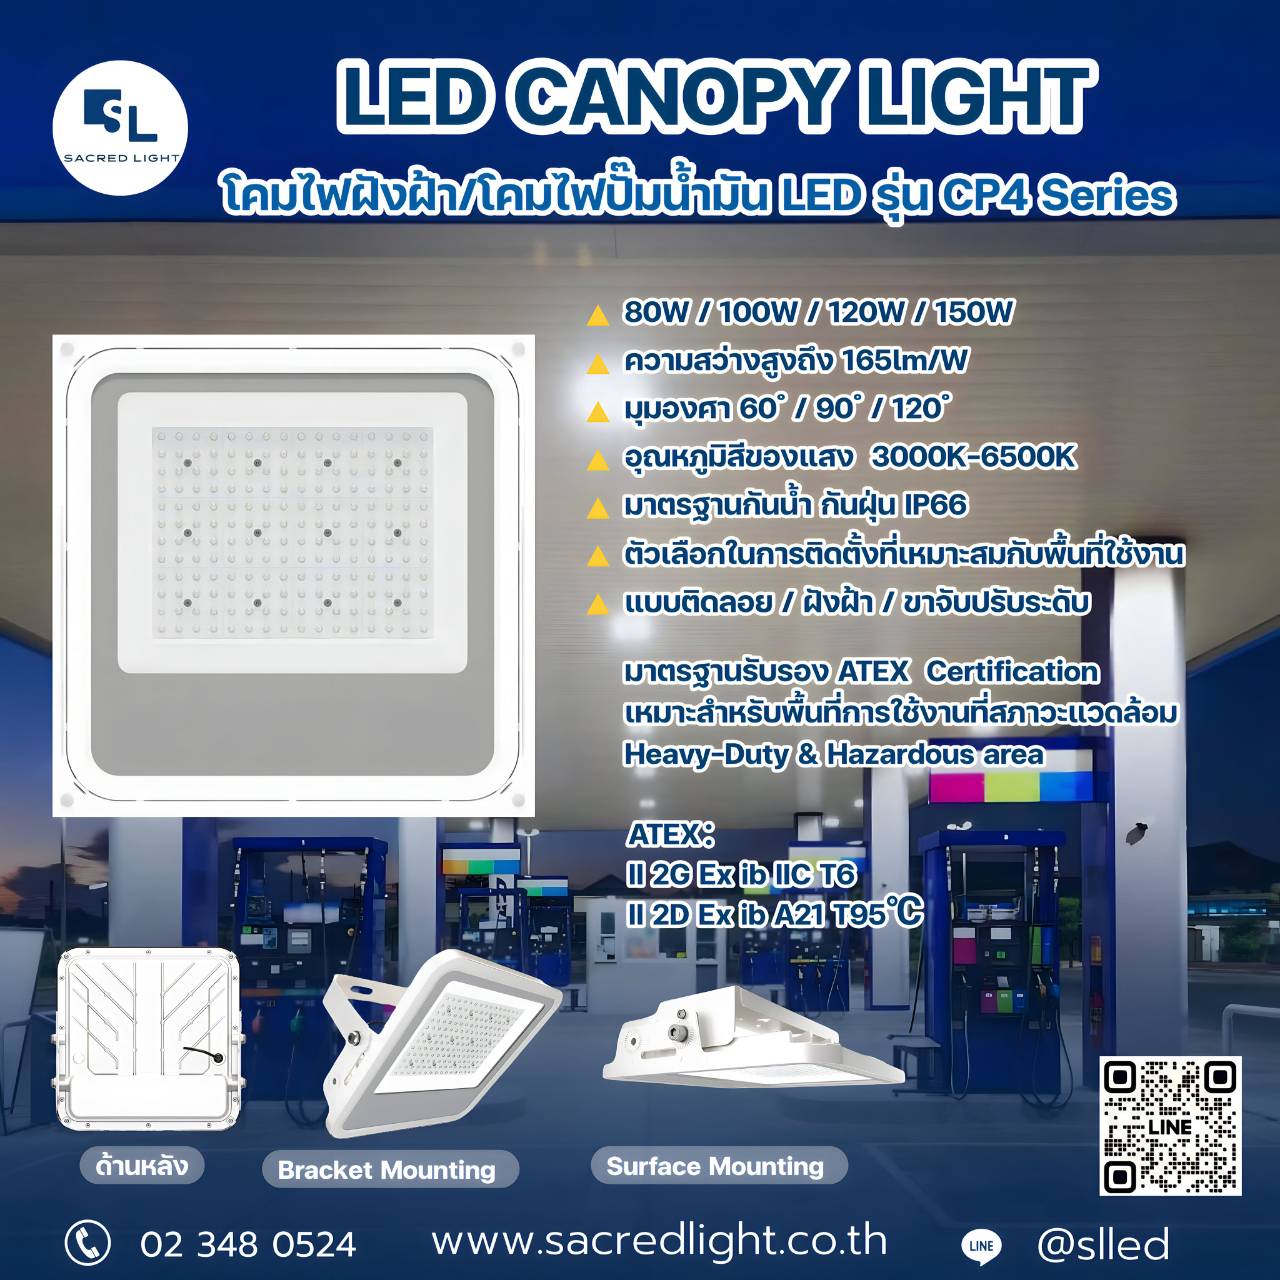 โคมไฟปั๊มน้ำมัน รุ่น CP4 (LED CANOPY LIGHT CP4 Series)